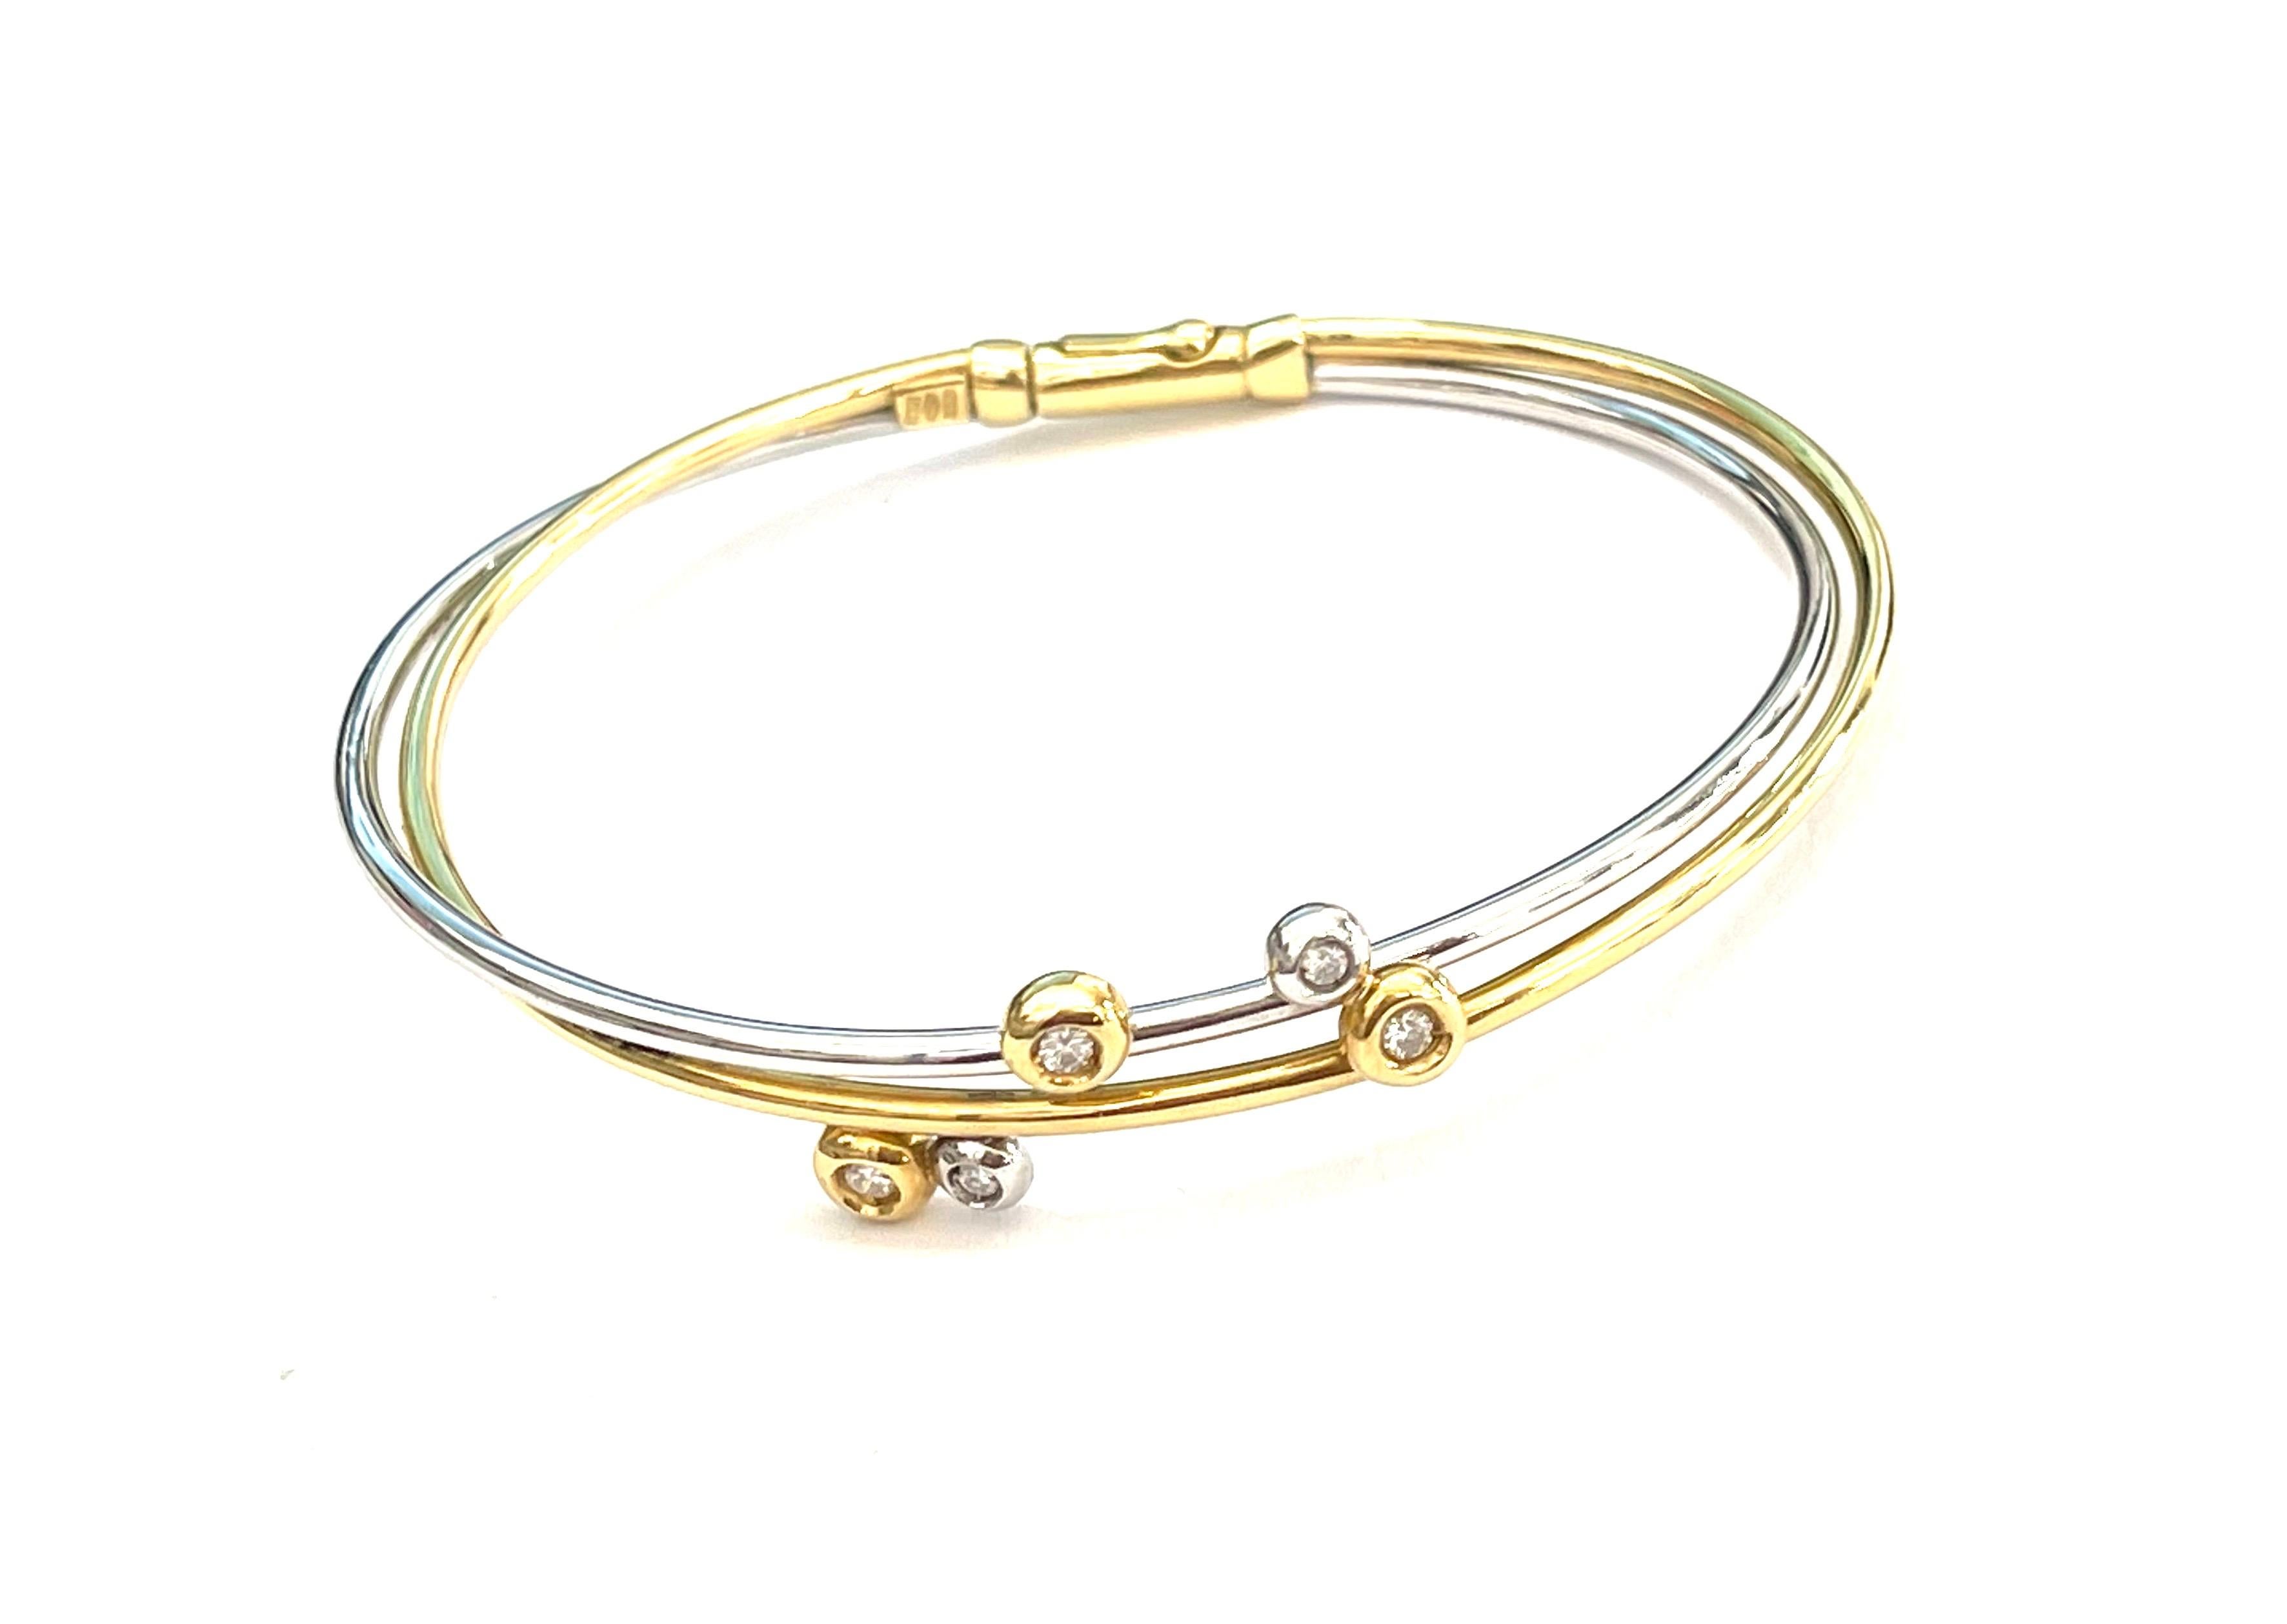 Bracelet en or blanc et or jaune avec des diamants blancs de la collection champagne. Très facile à porter pour sa flexibilité.
Le poids total de l'or est de 10,90 GR
Le poids des diamants est de 0,16 ct

Tampon 10 MI 750

